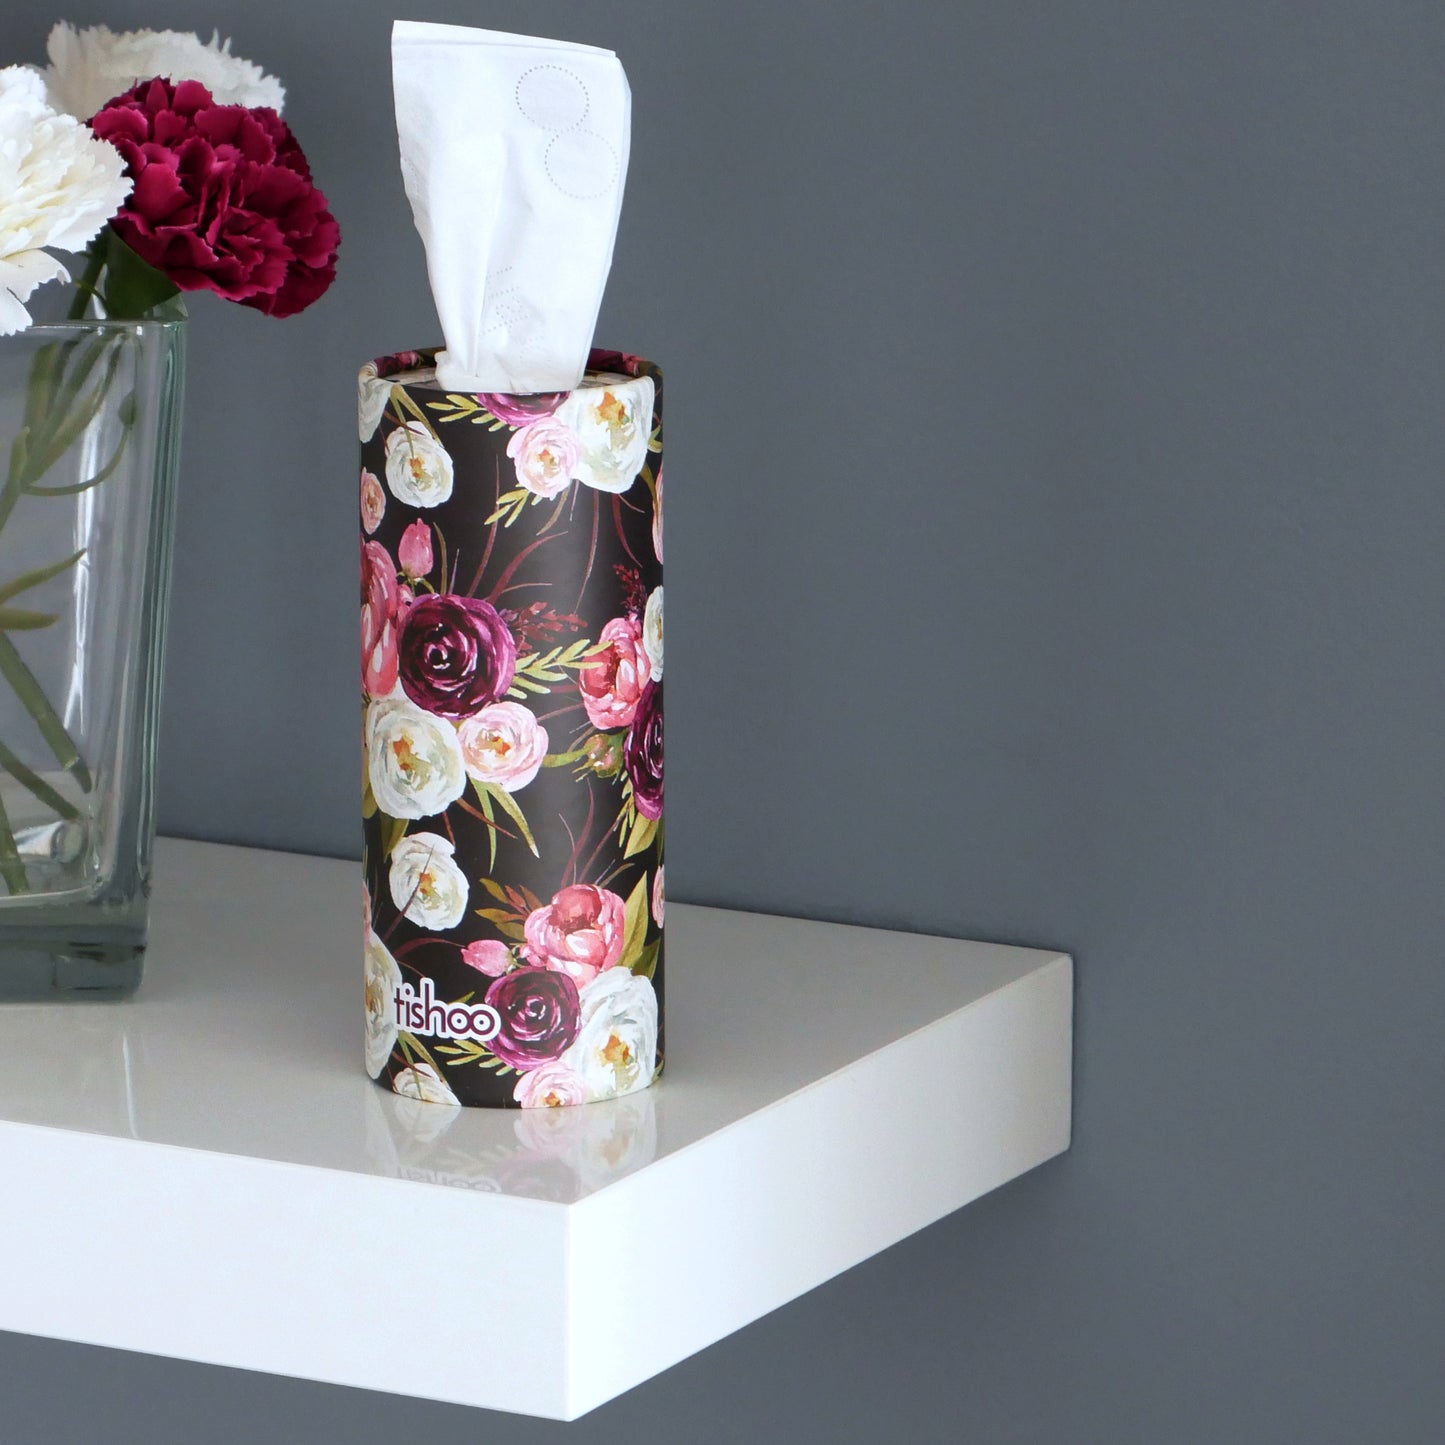 tishoo Luxury Tissues Purple/Floral design on shelf